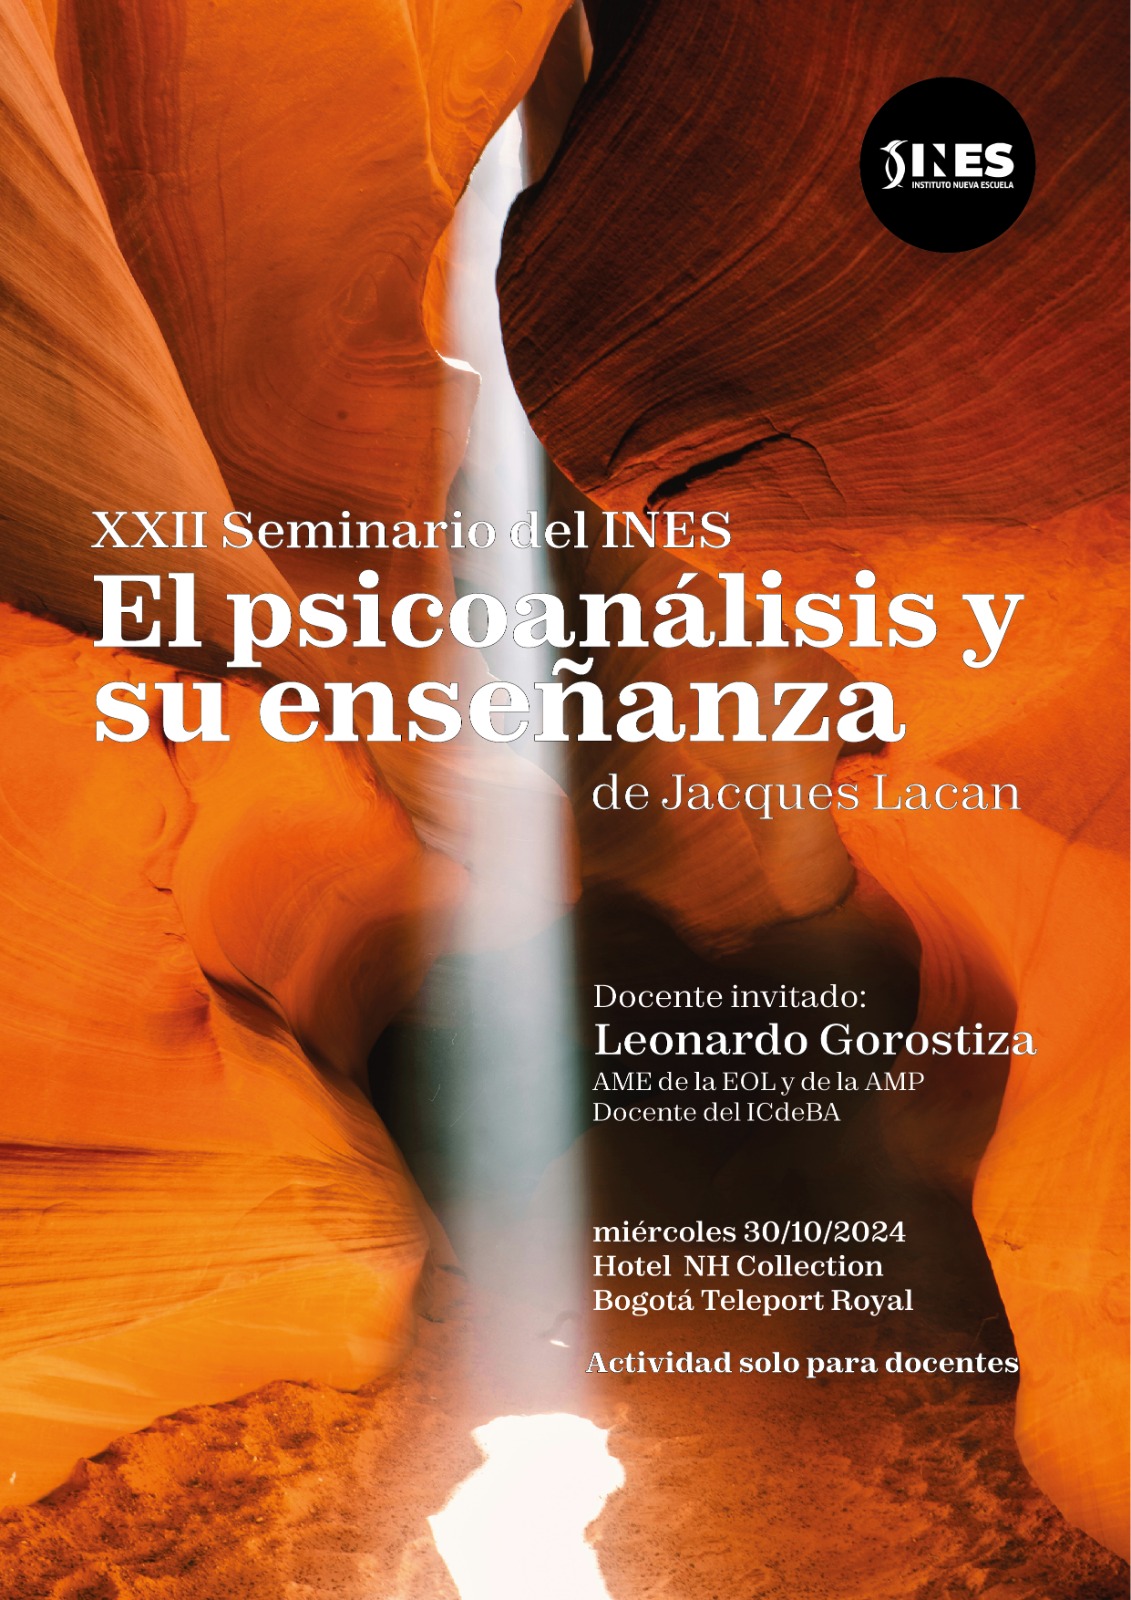 XXII Seminario del INES (Gorostiza)